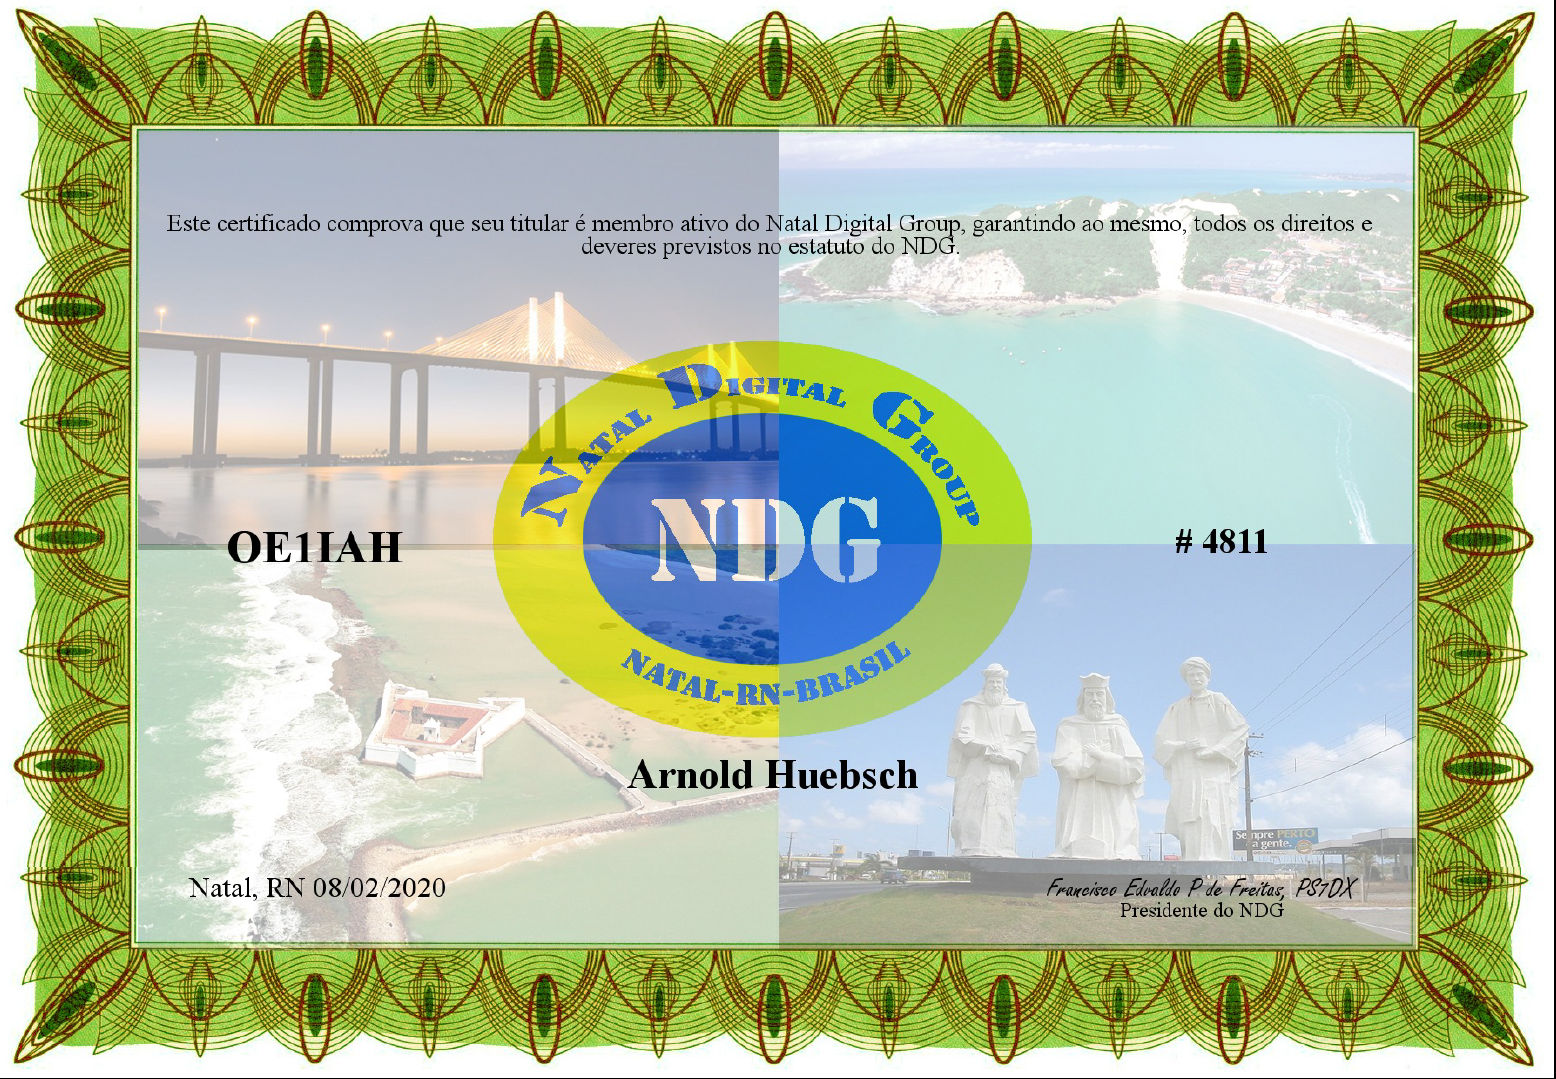 NDG Membership